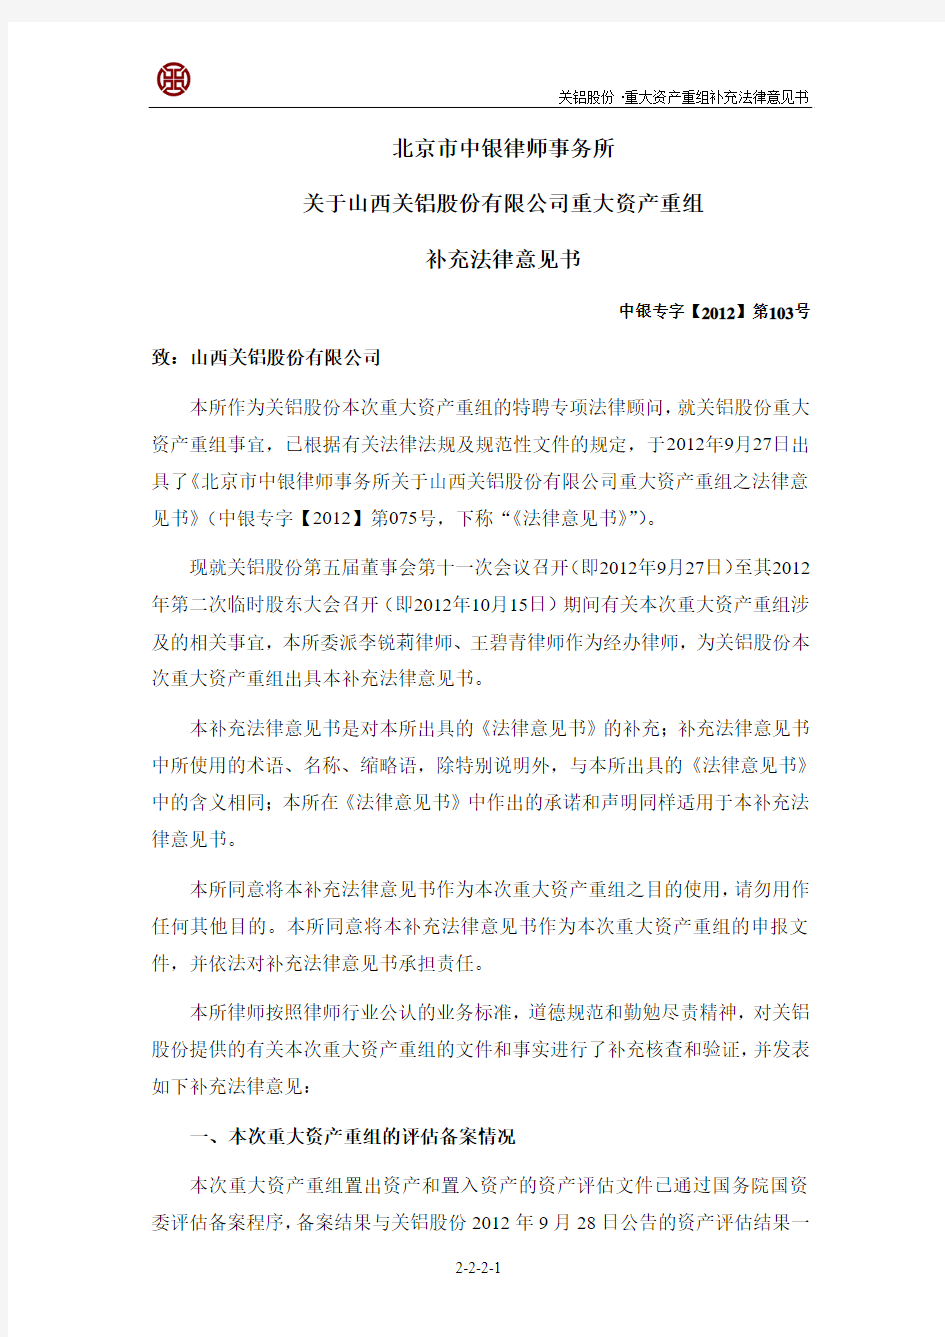 北京市中银律师事务所关于公司重大资产重组补充法律意见书